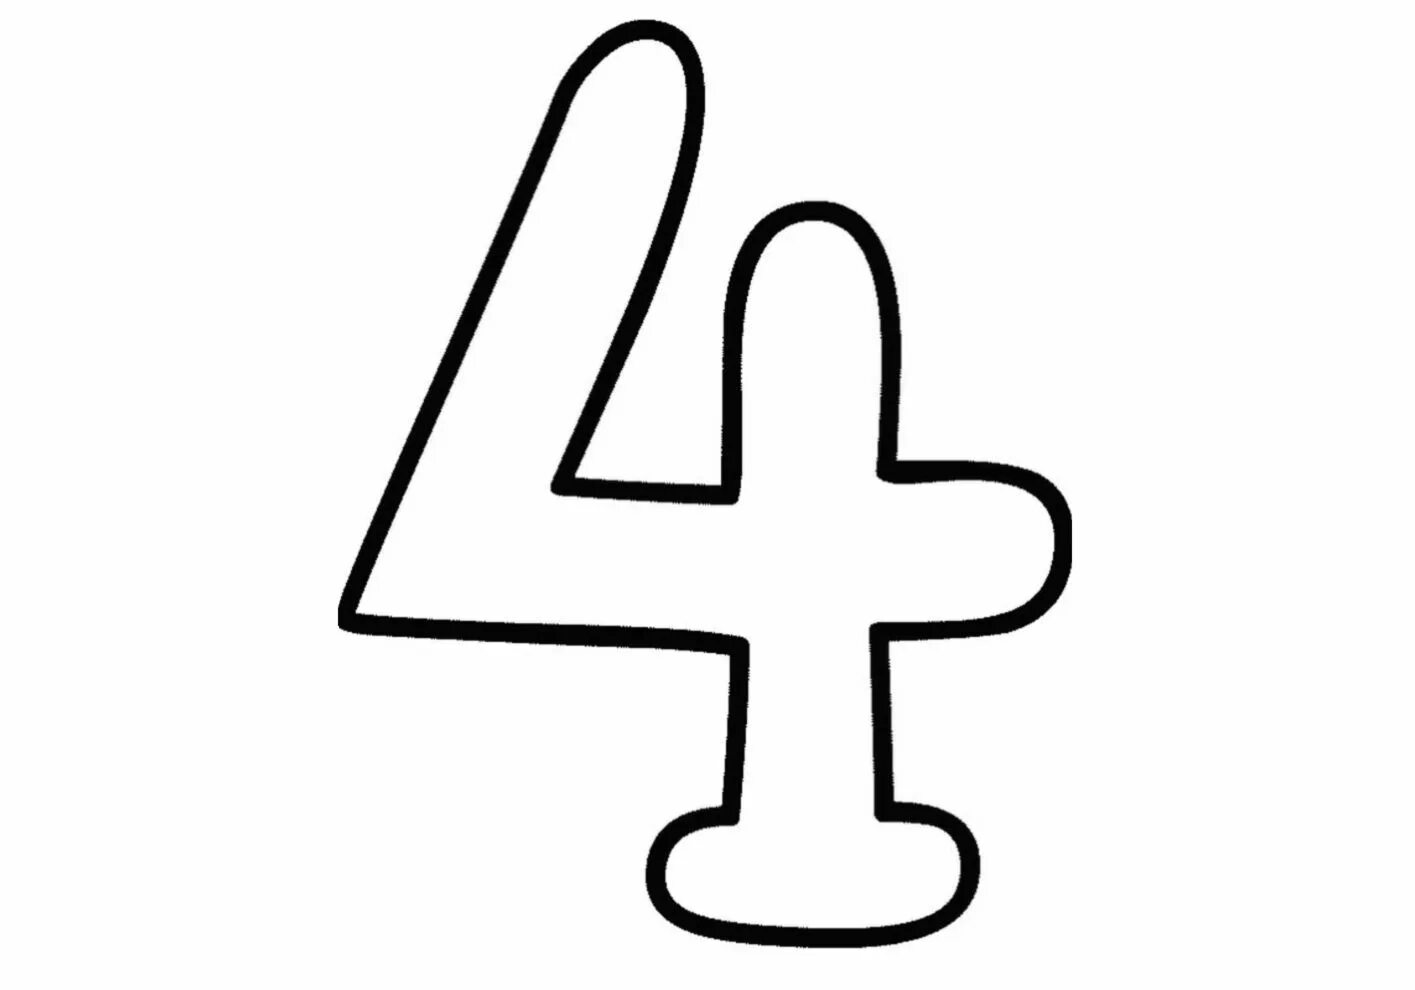 Four #5